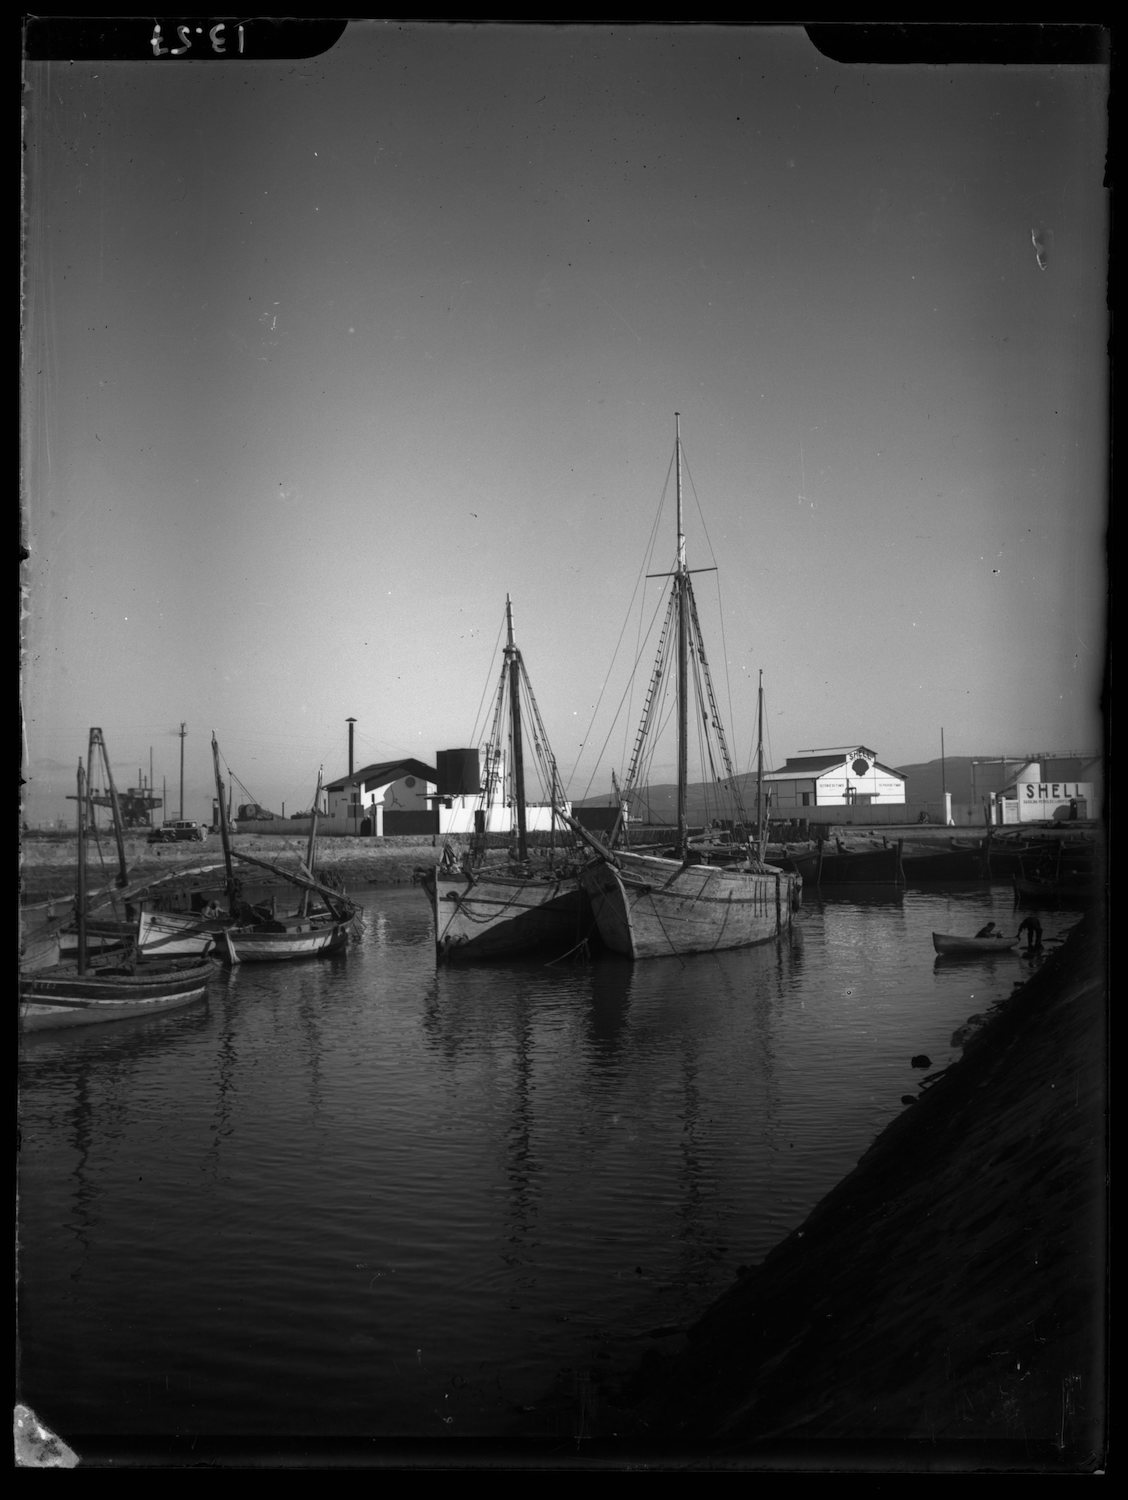 Sailboats at the docks.